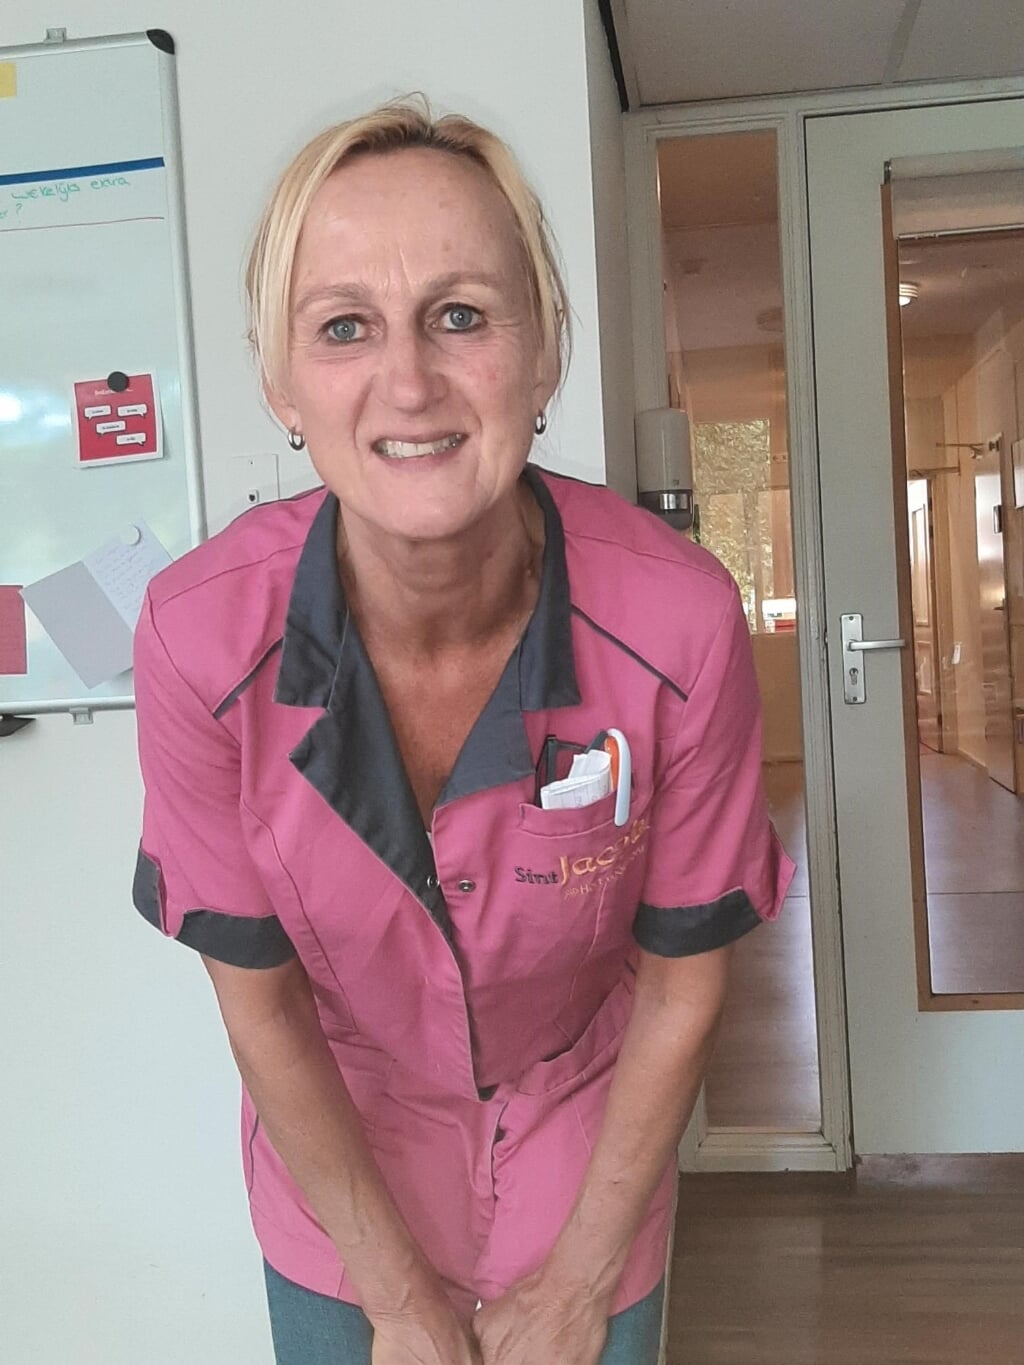 Al ruim 26 jaar werkt Anja Molenaar met veel plezier als helpende zorg en welzijn bij Sint Jacob. 